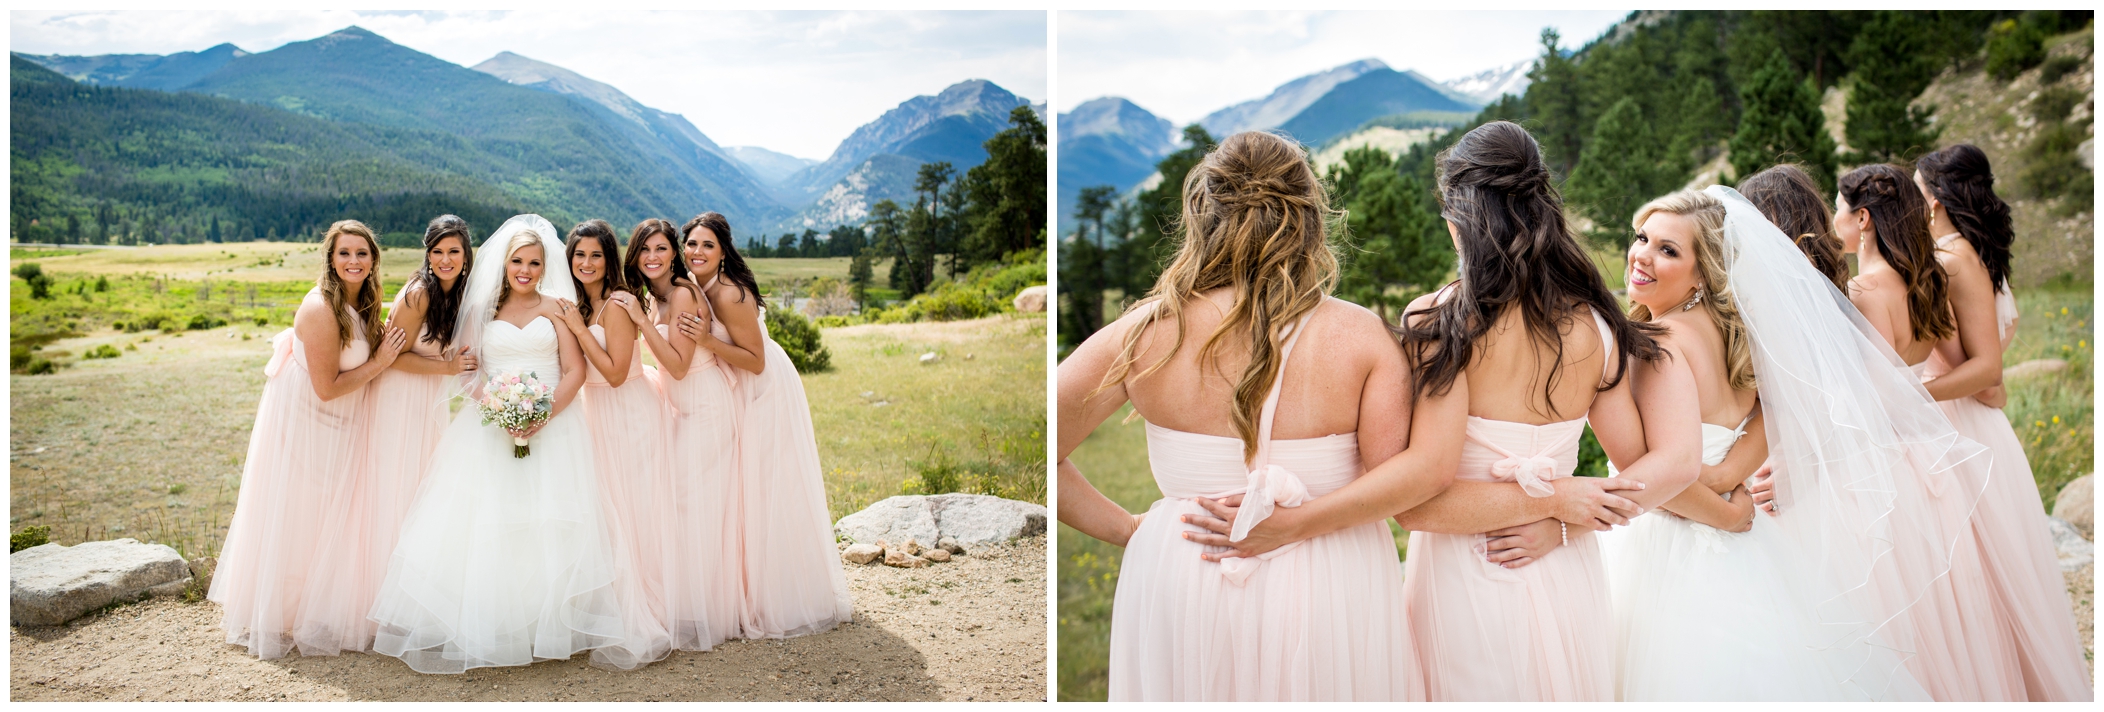 Estes Park wedding photos at Rocky Mountain National Park 